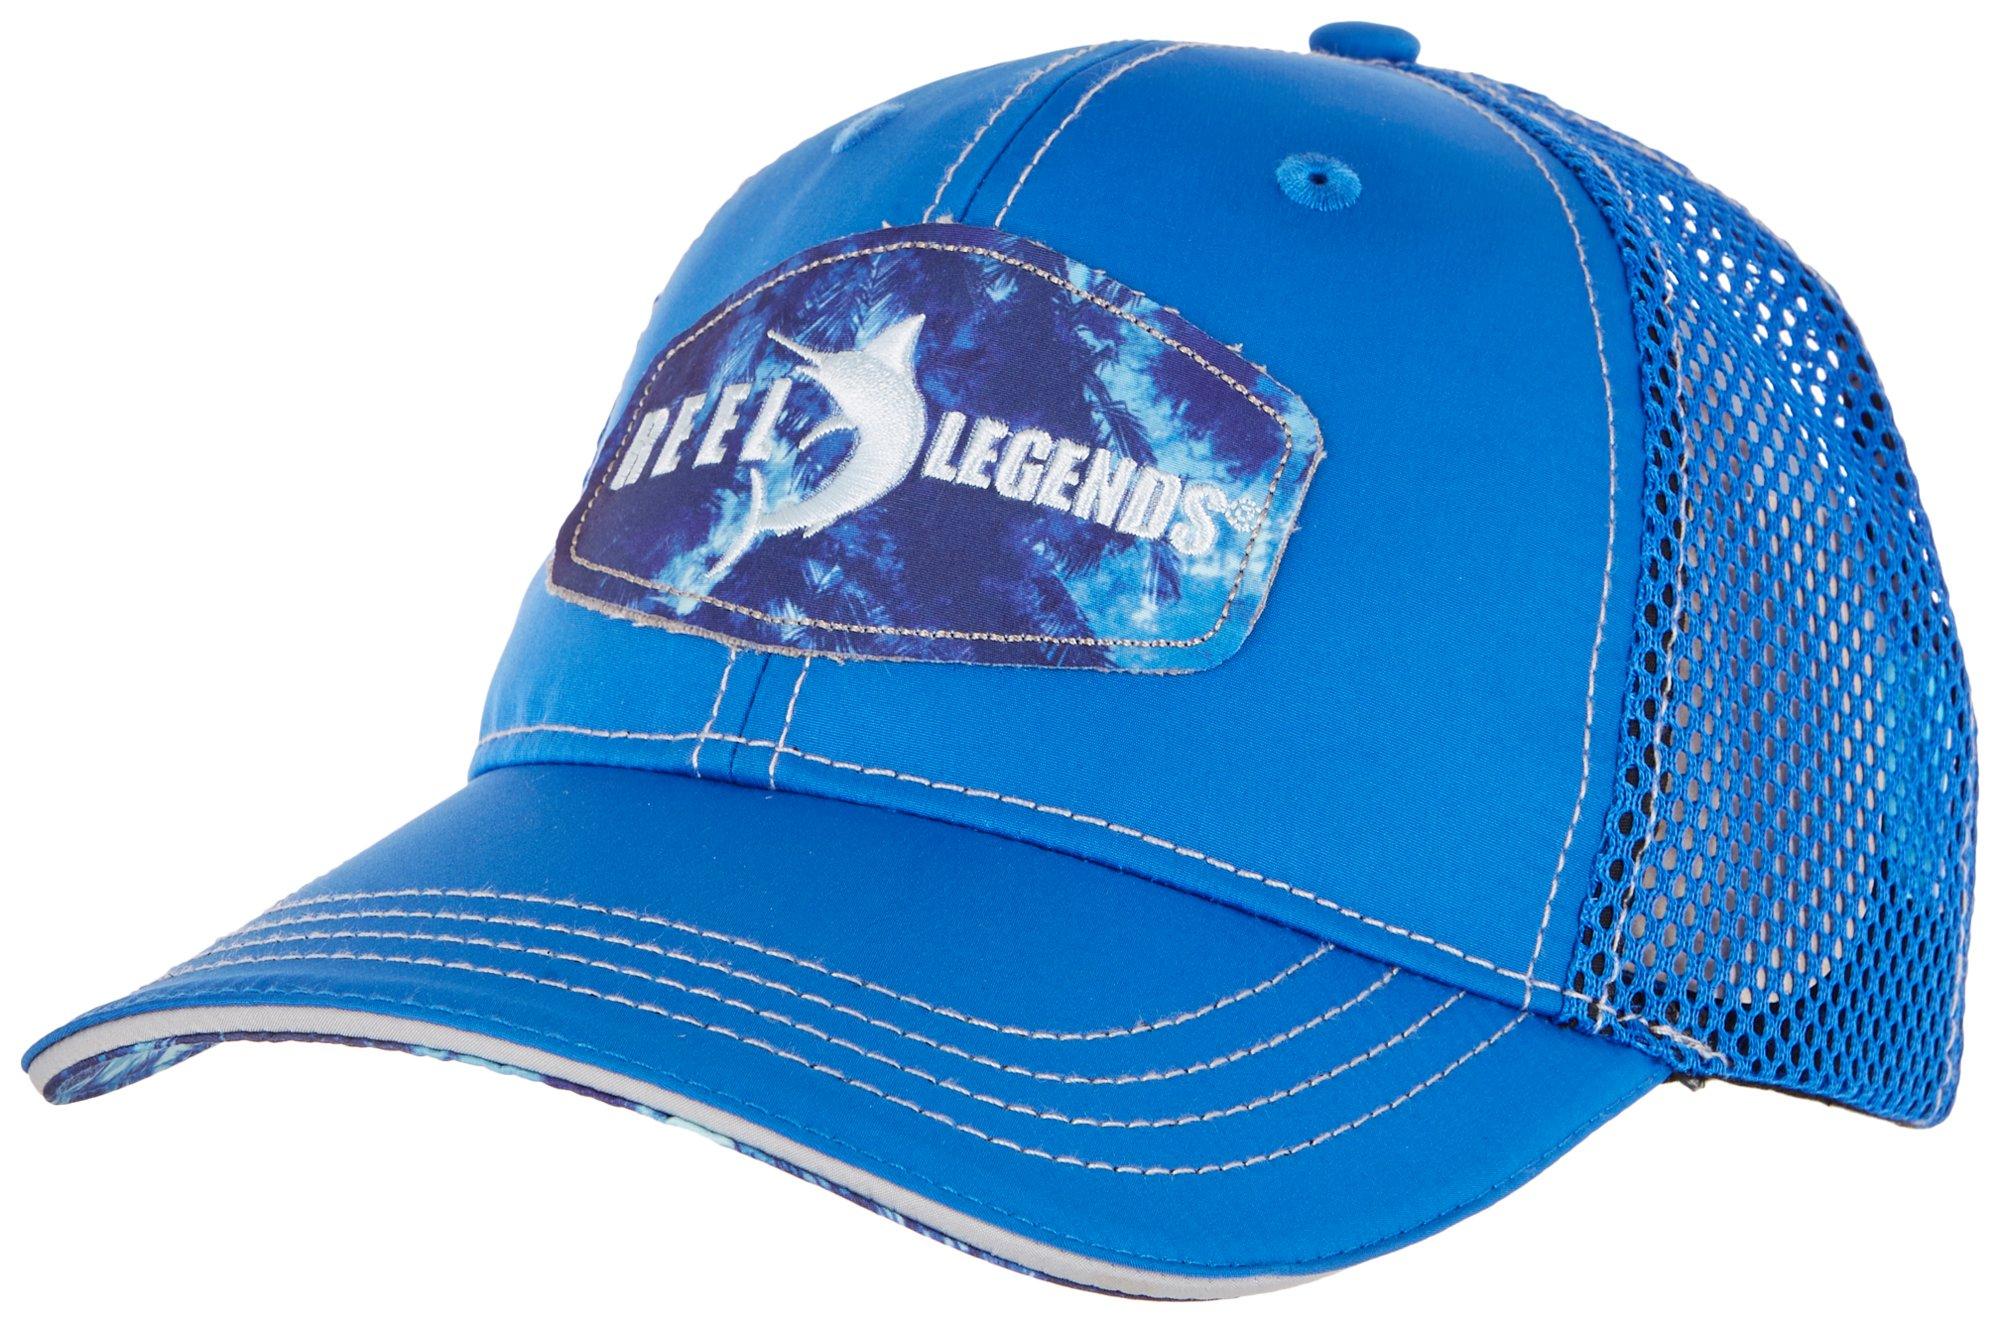 Reel Legends Boys Core Mesh Trucker Hat